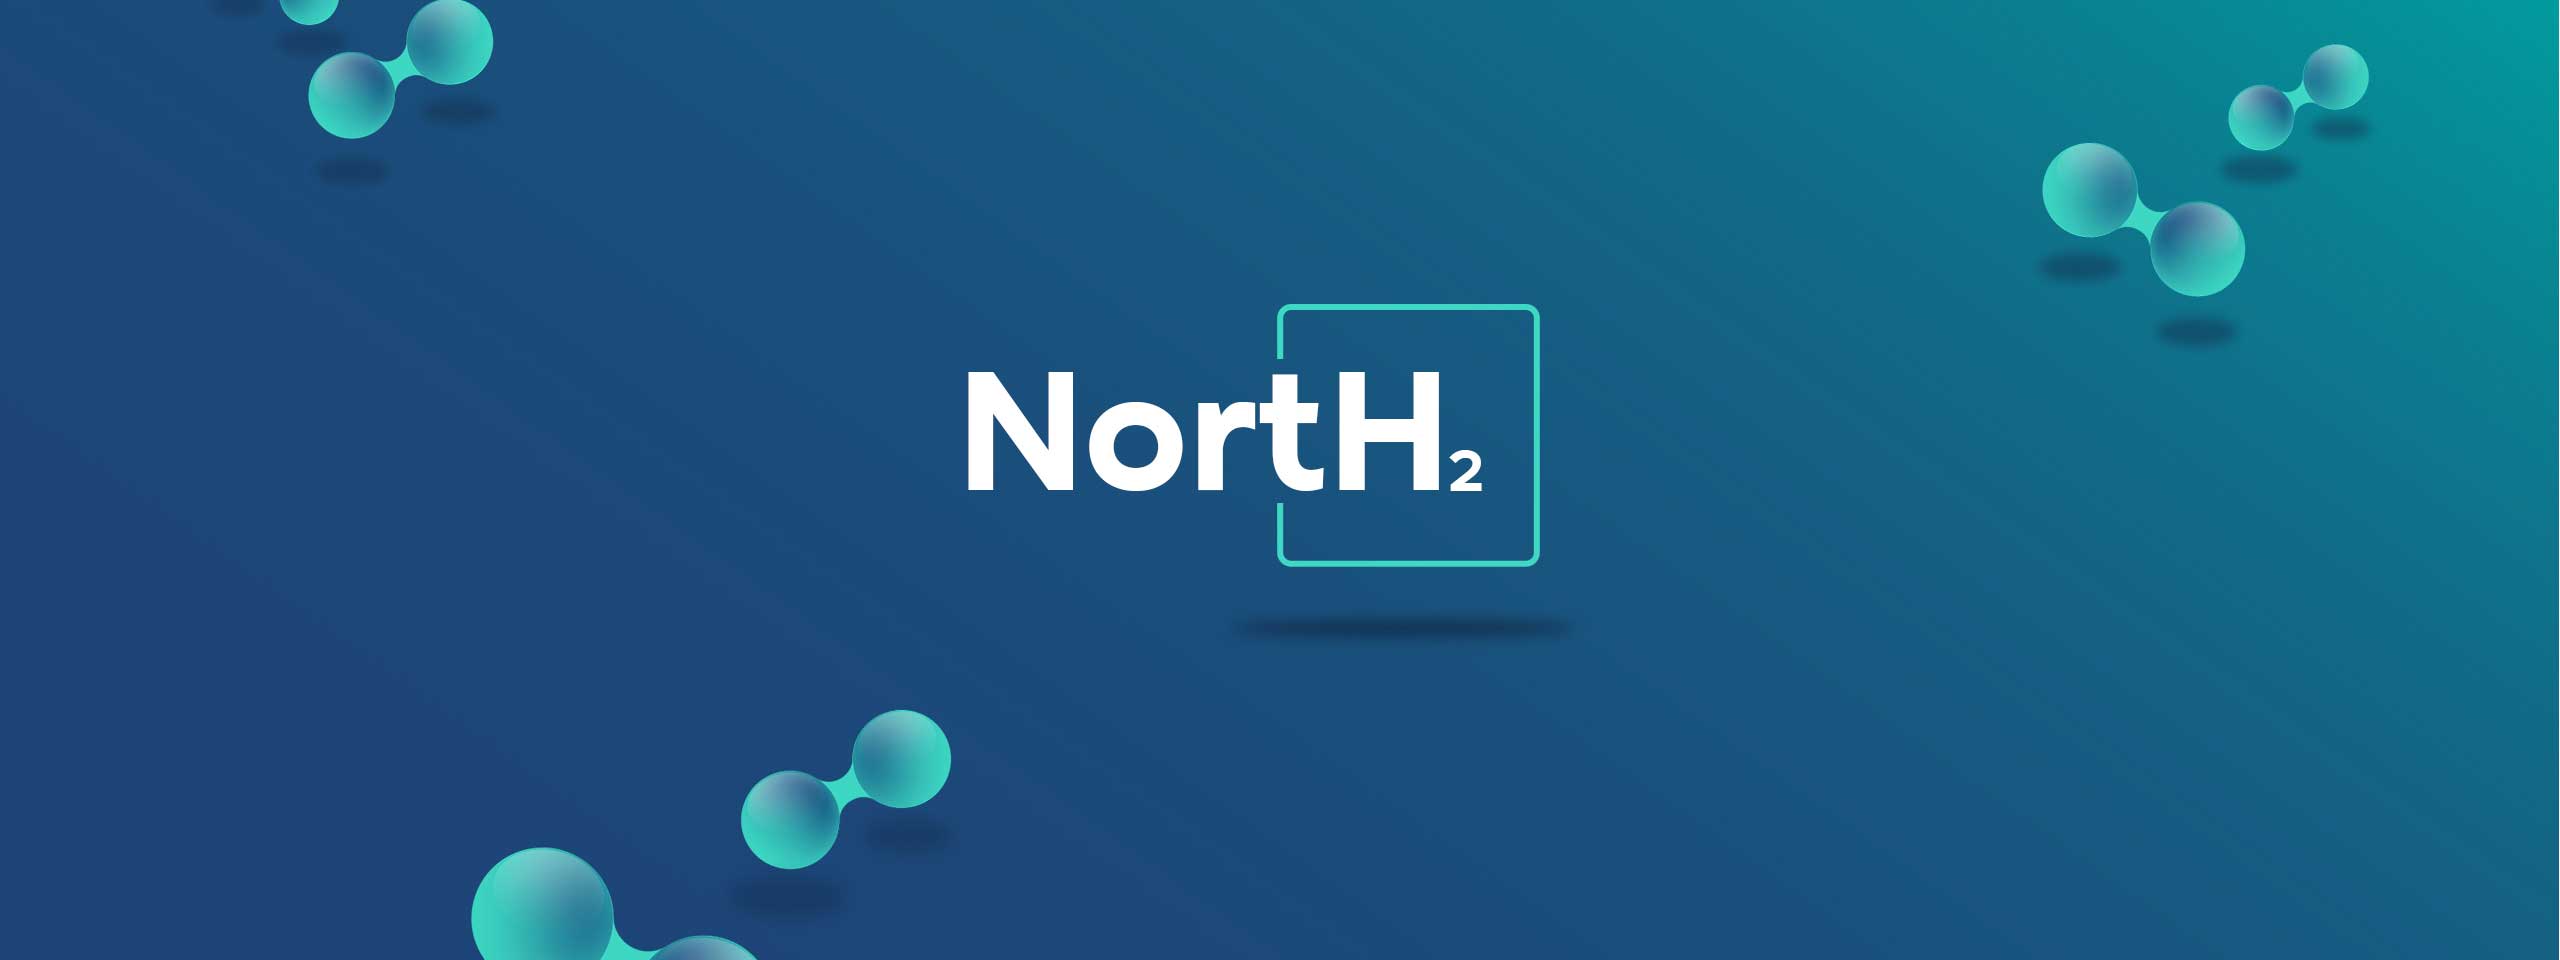 NortH2 – Entwicklung eines Zentrums für grünen Wasserstoff für Nordwesteuropa